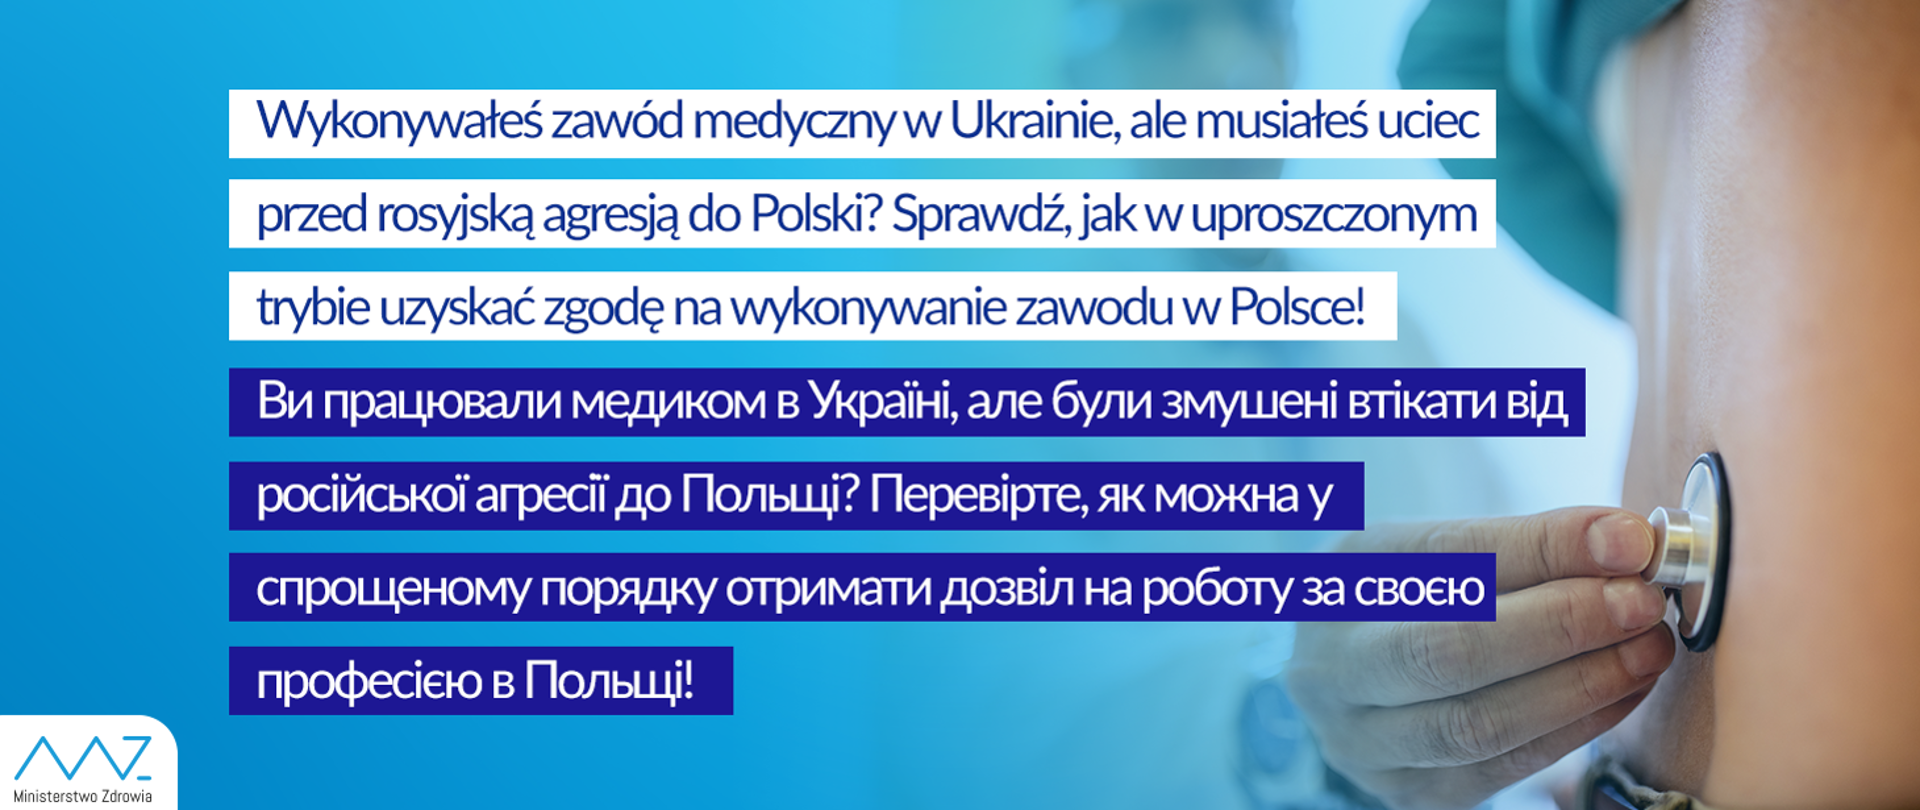 Komunikat w sprawie zasad zatrudniania personelu medycznego z Ukrainy w Polsce